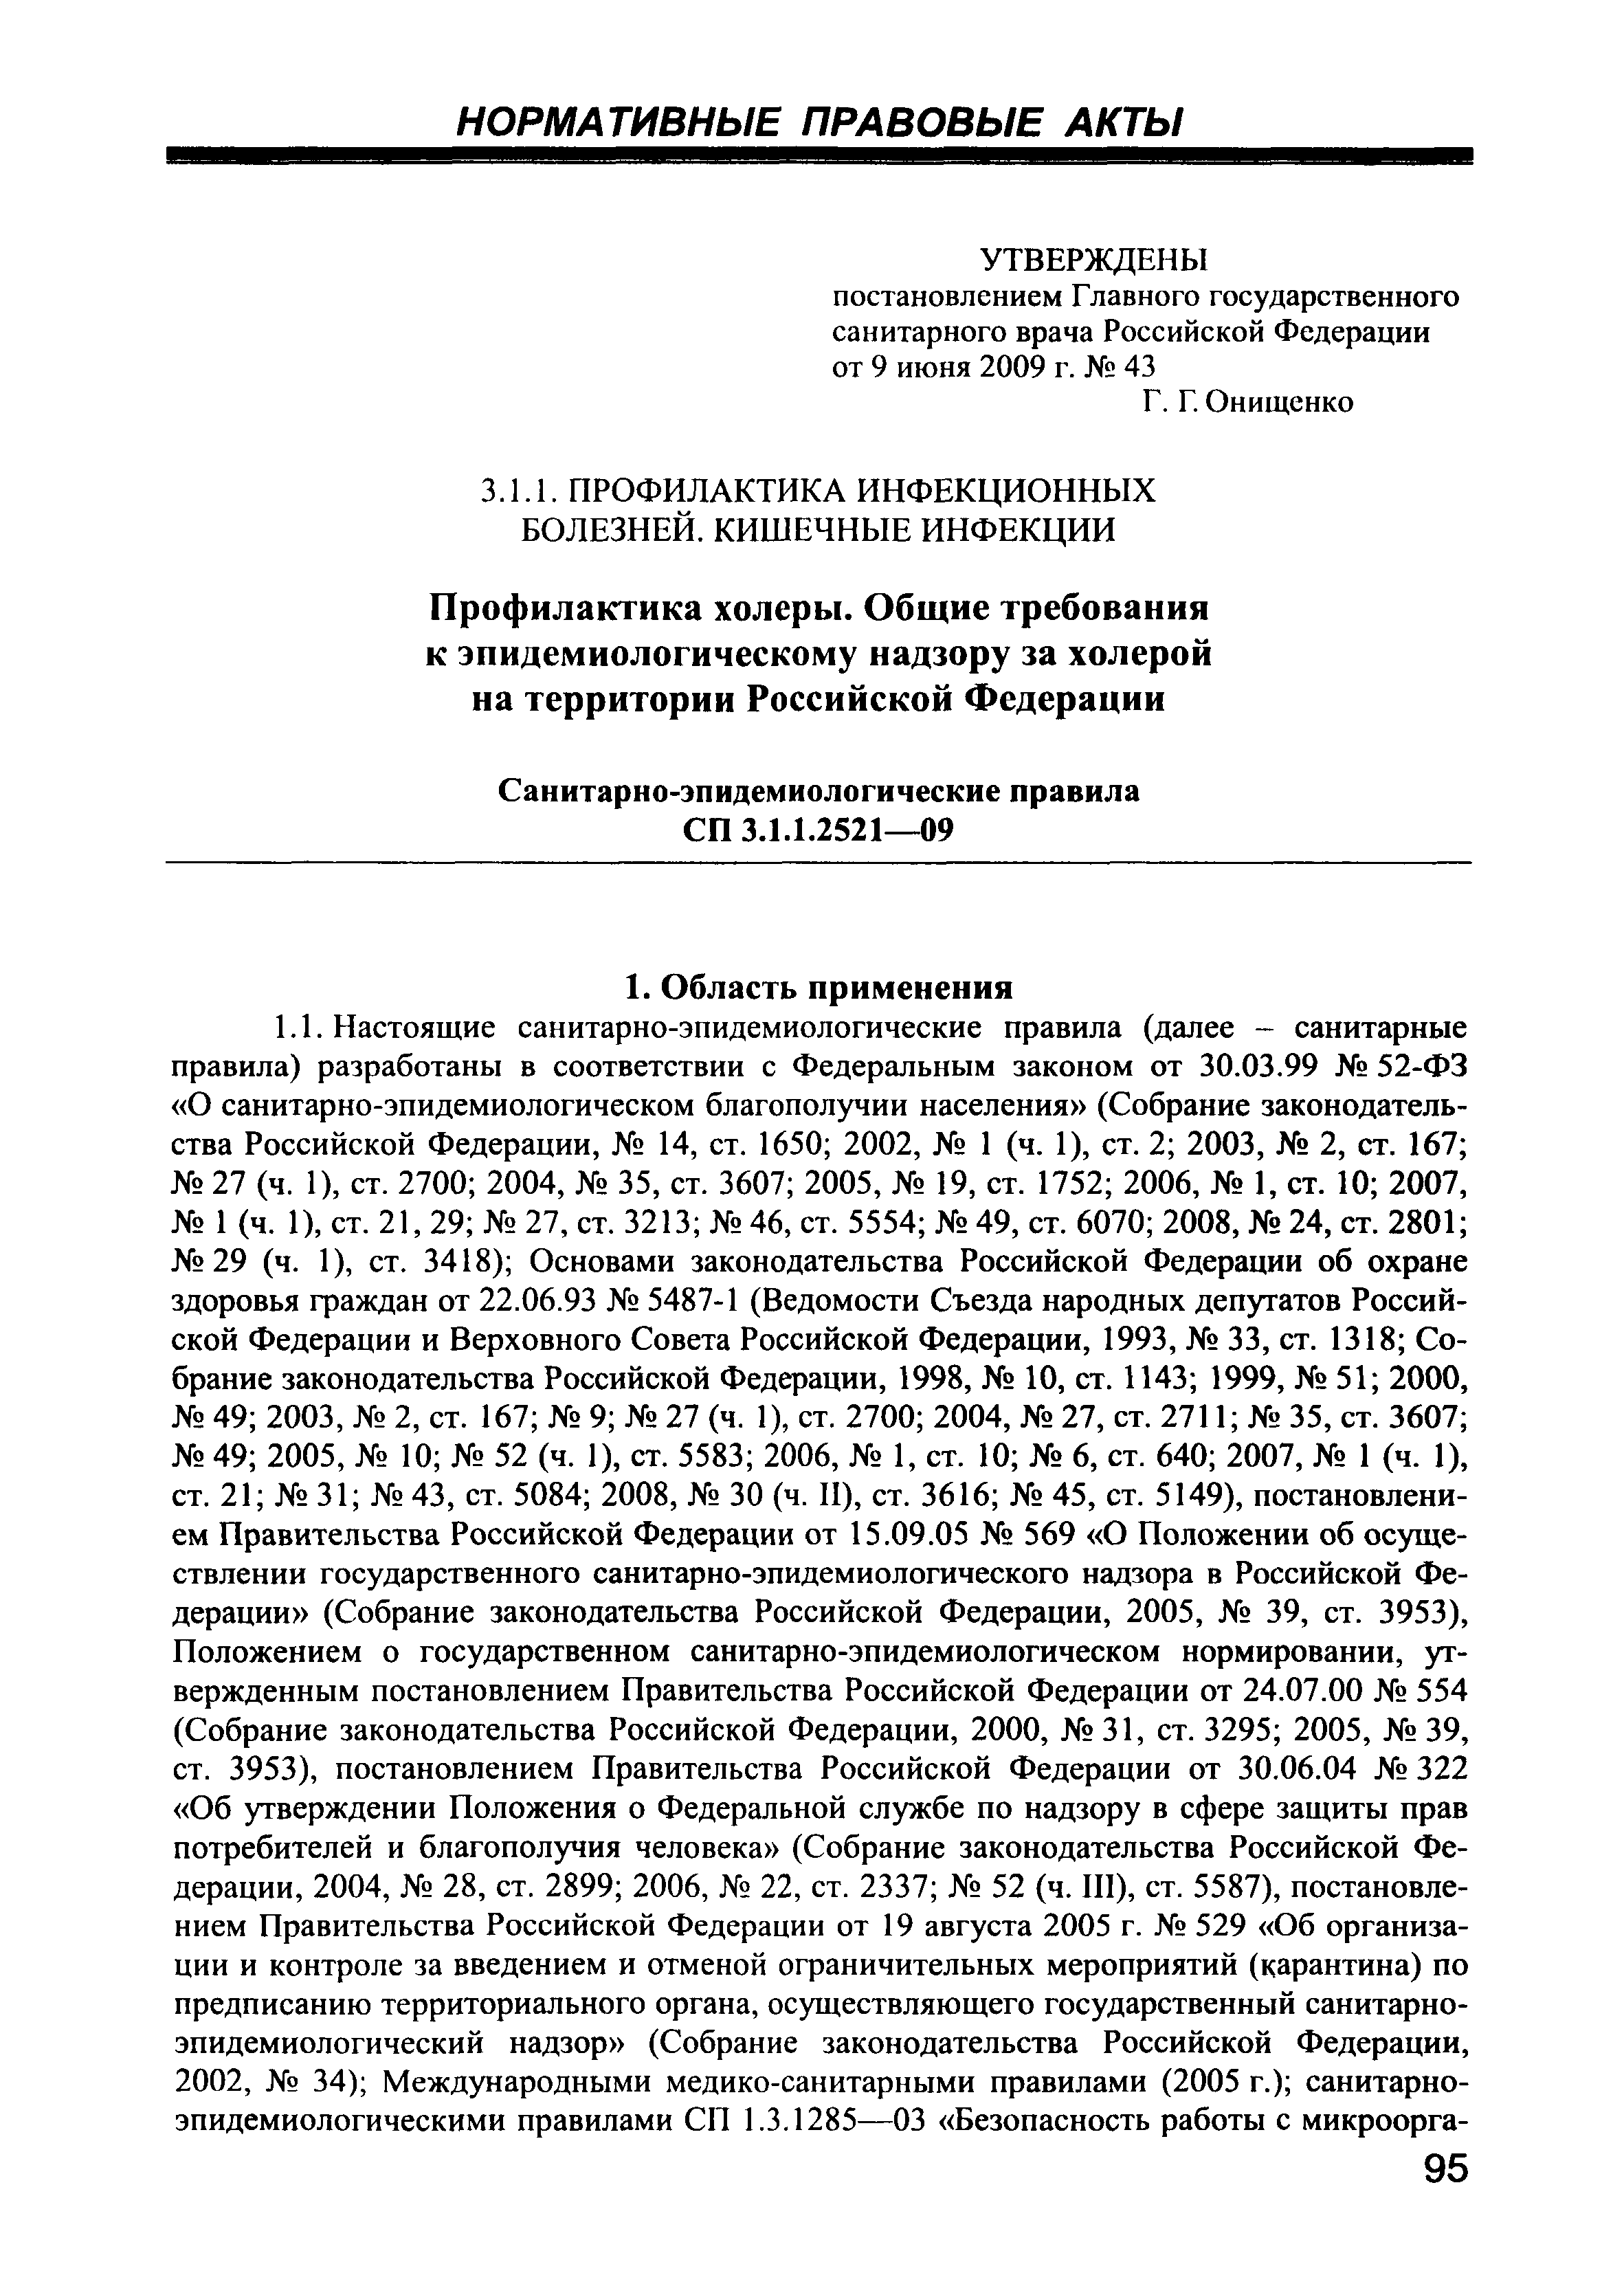 СП 3.1.1.2521-09